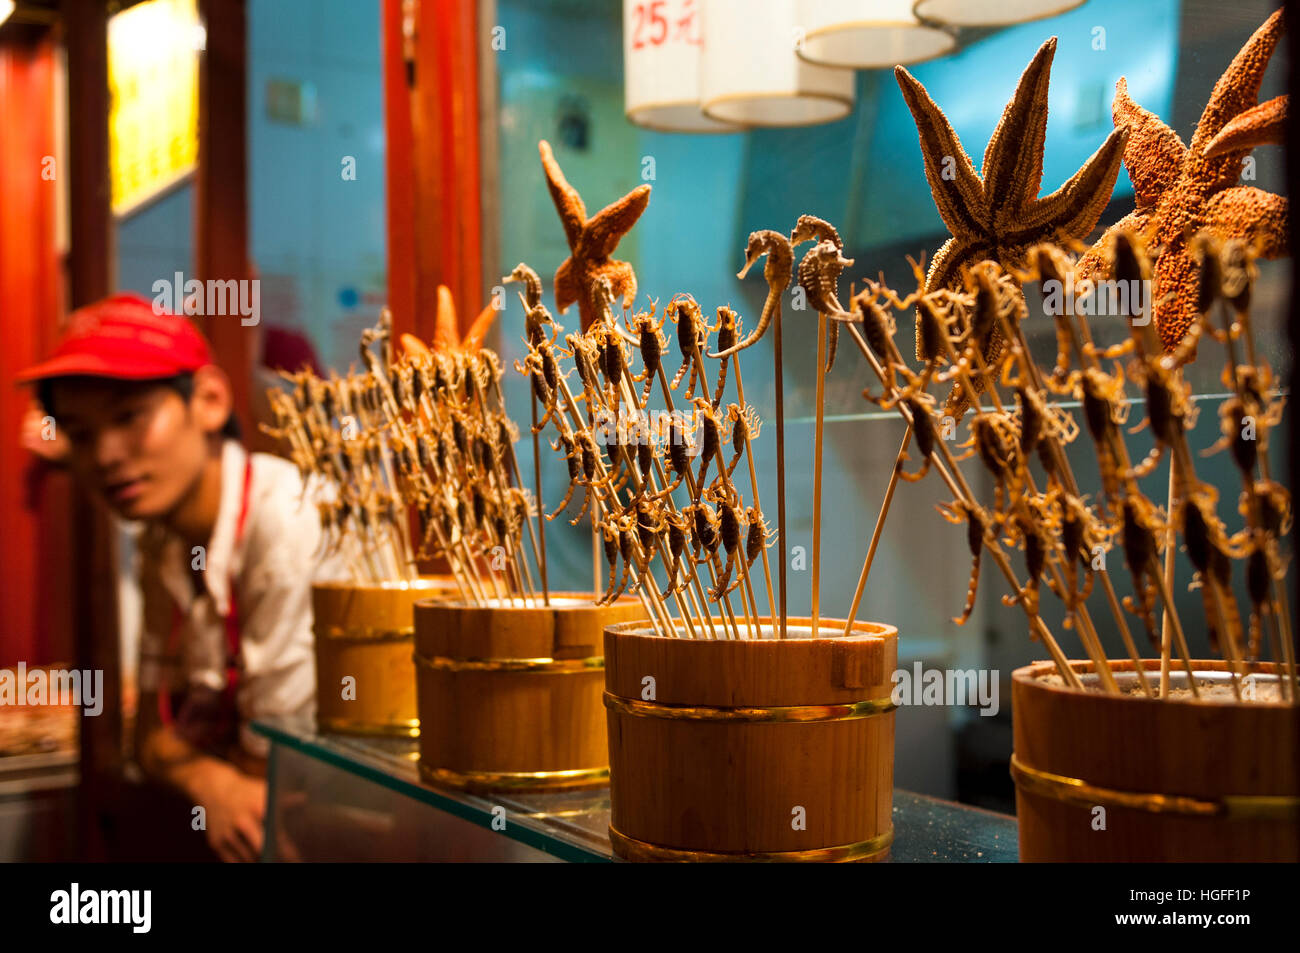 Escorpiones fritos, caballitos de mar y estrellas de mar se vende como comida en un puesto de comida en Pekín, China Foto de stock